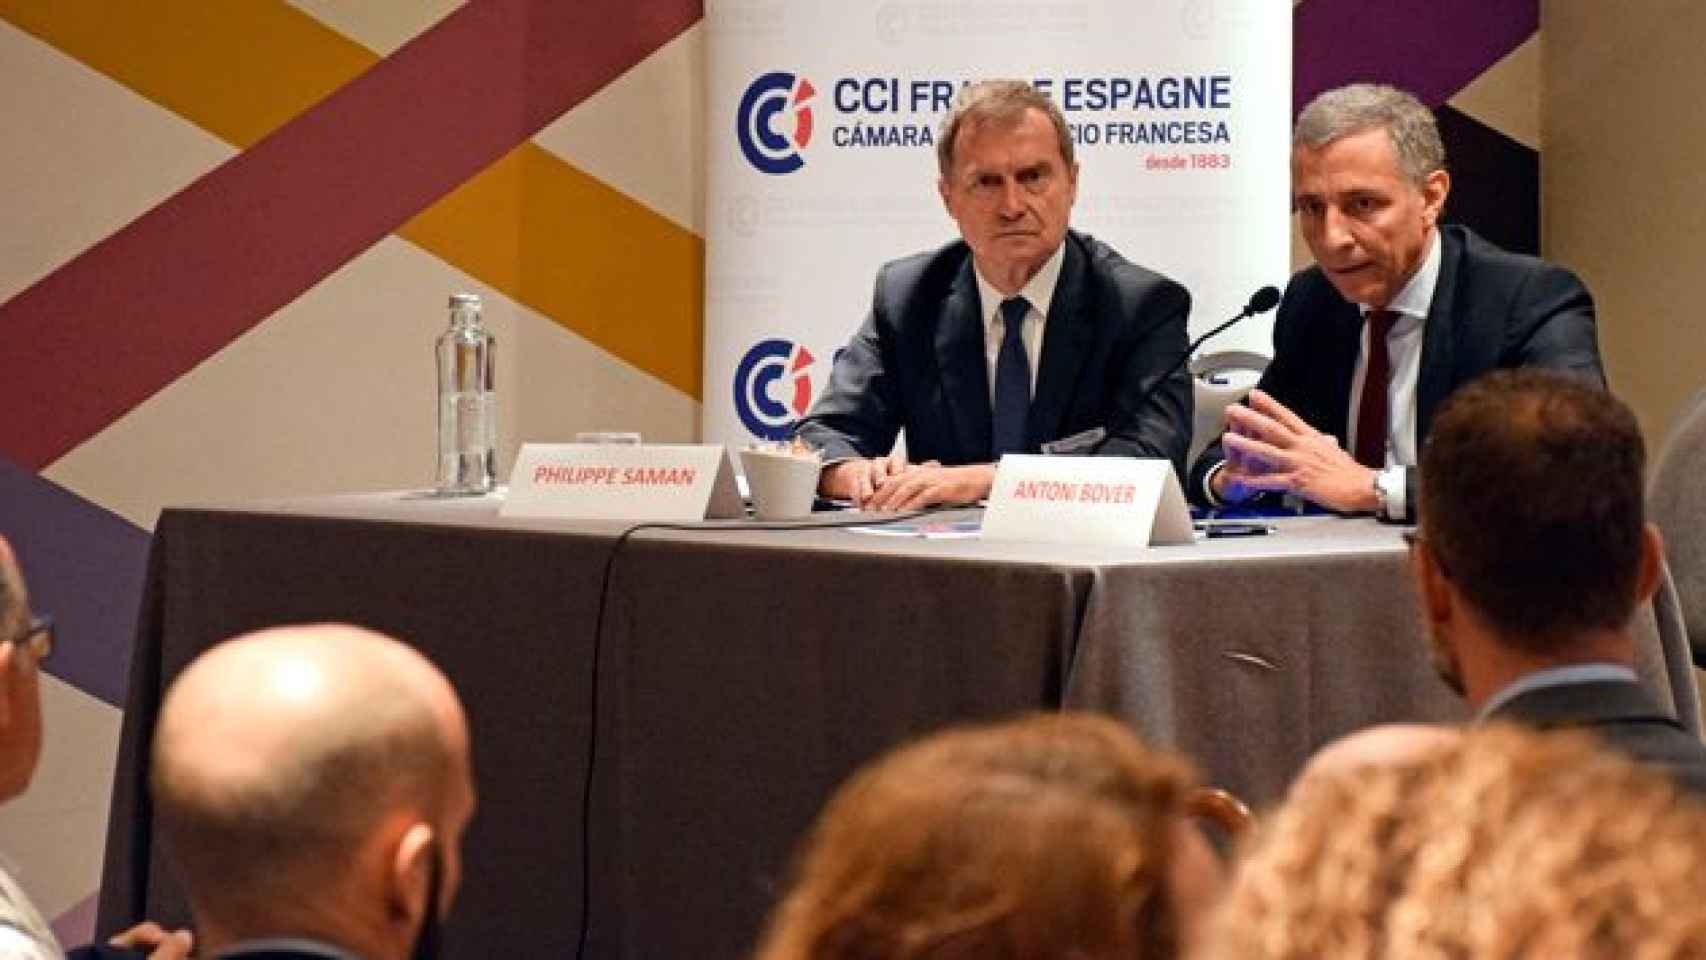 Antonio Bover y Philippe Saman, presidente y director de la Cámara de Comercio e Insutria Francesa de Barcelona en el monográfico sobre el 'procés' / CG